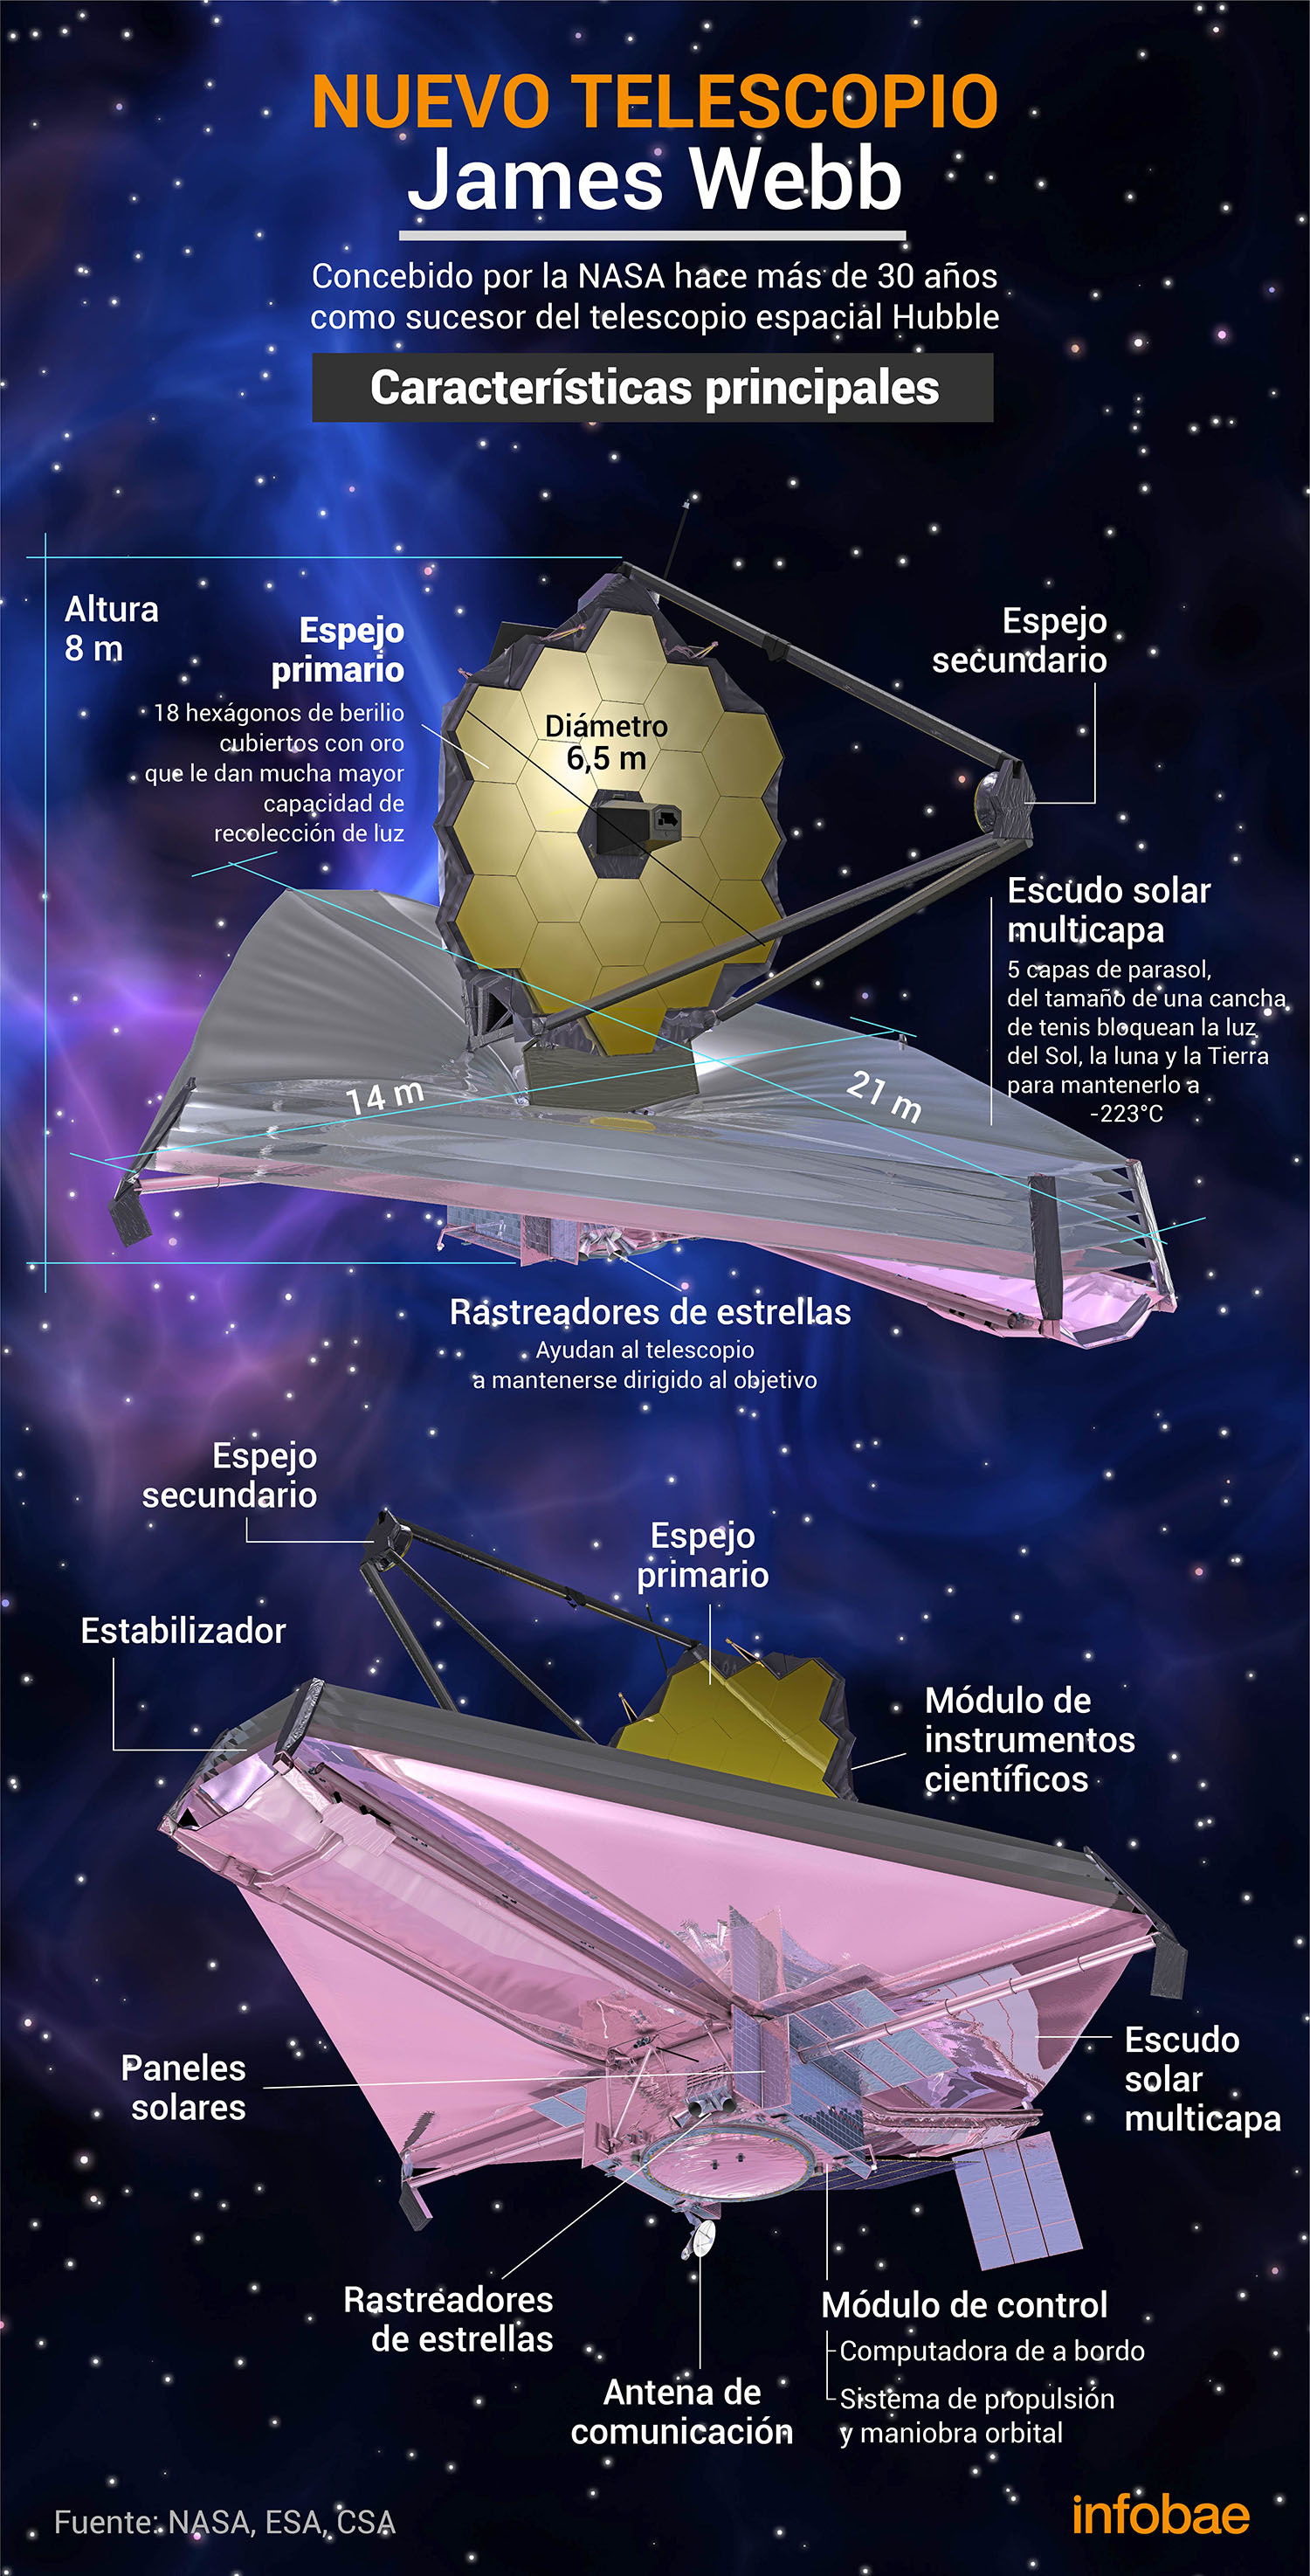 El Telescopio James Webb revolucionó el rubro de la astronomía por los hallazgos inéditos que permite concretar